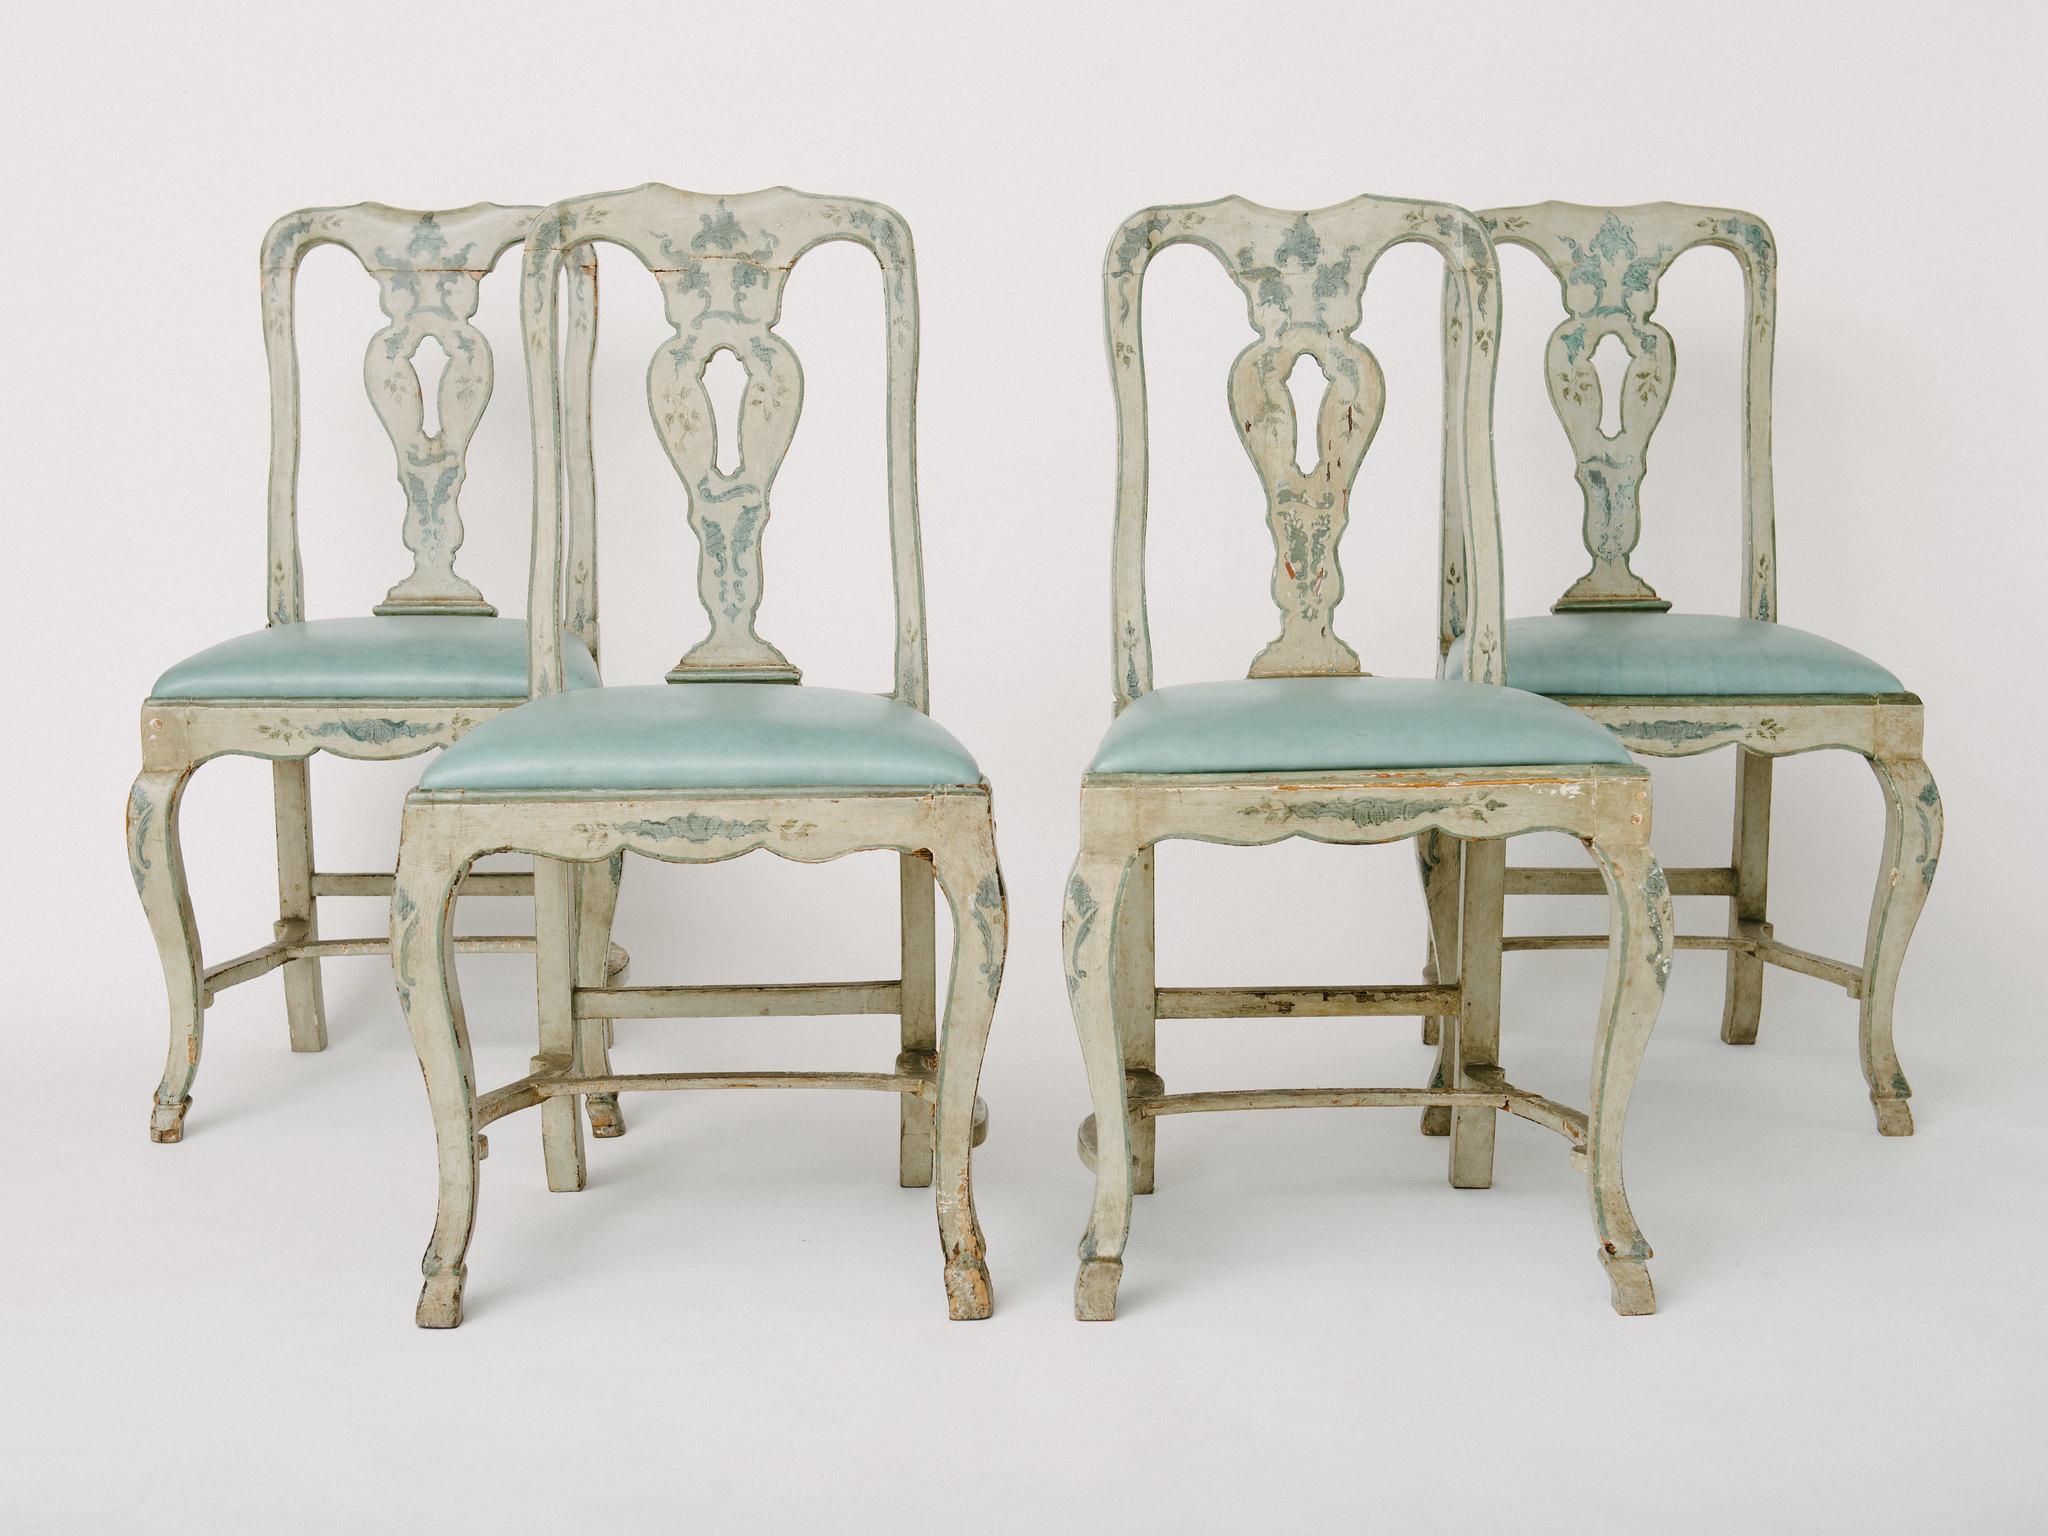 chaises latérales vénitiennes du XVIIIe siècle peintes en bleu-gris avec sièges en cuir. Les chaises ont une marque de fabricant en forme de croix héraldique gravée sur le dos des chaises. Les brancards et les sabots pied-de-biche sont sculptés à la